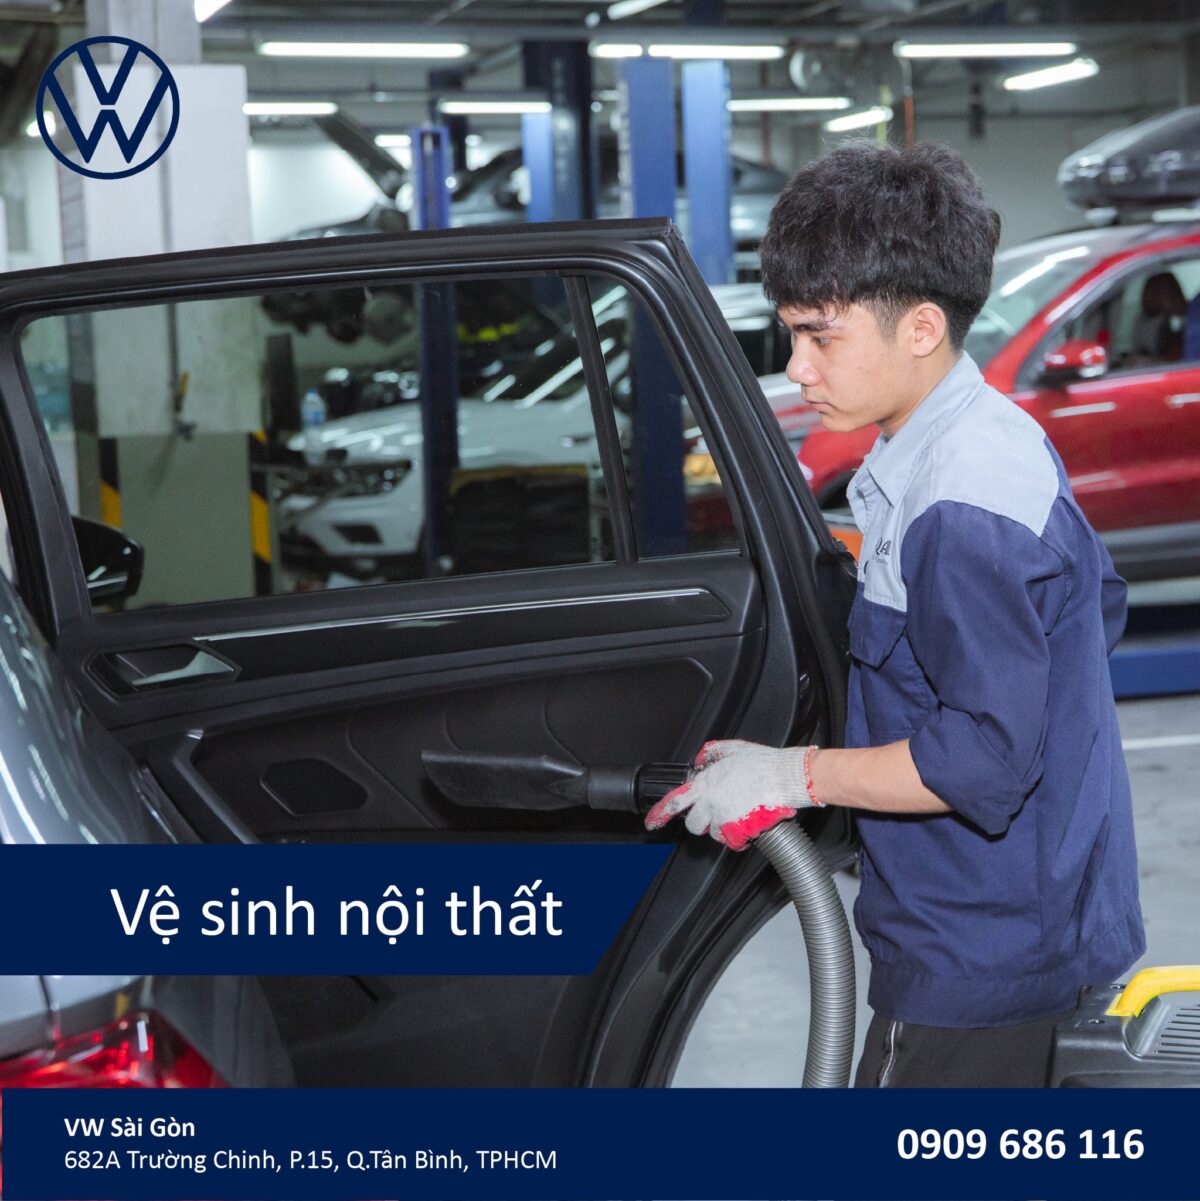 Ưu đãi đặc biệt: Nhận gift voucher dịch vụ khi mua xe tại VW Sài Gòn